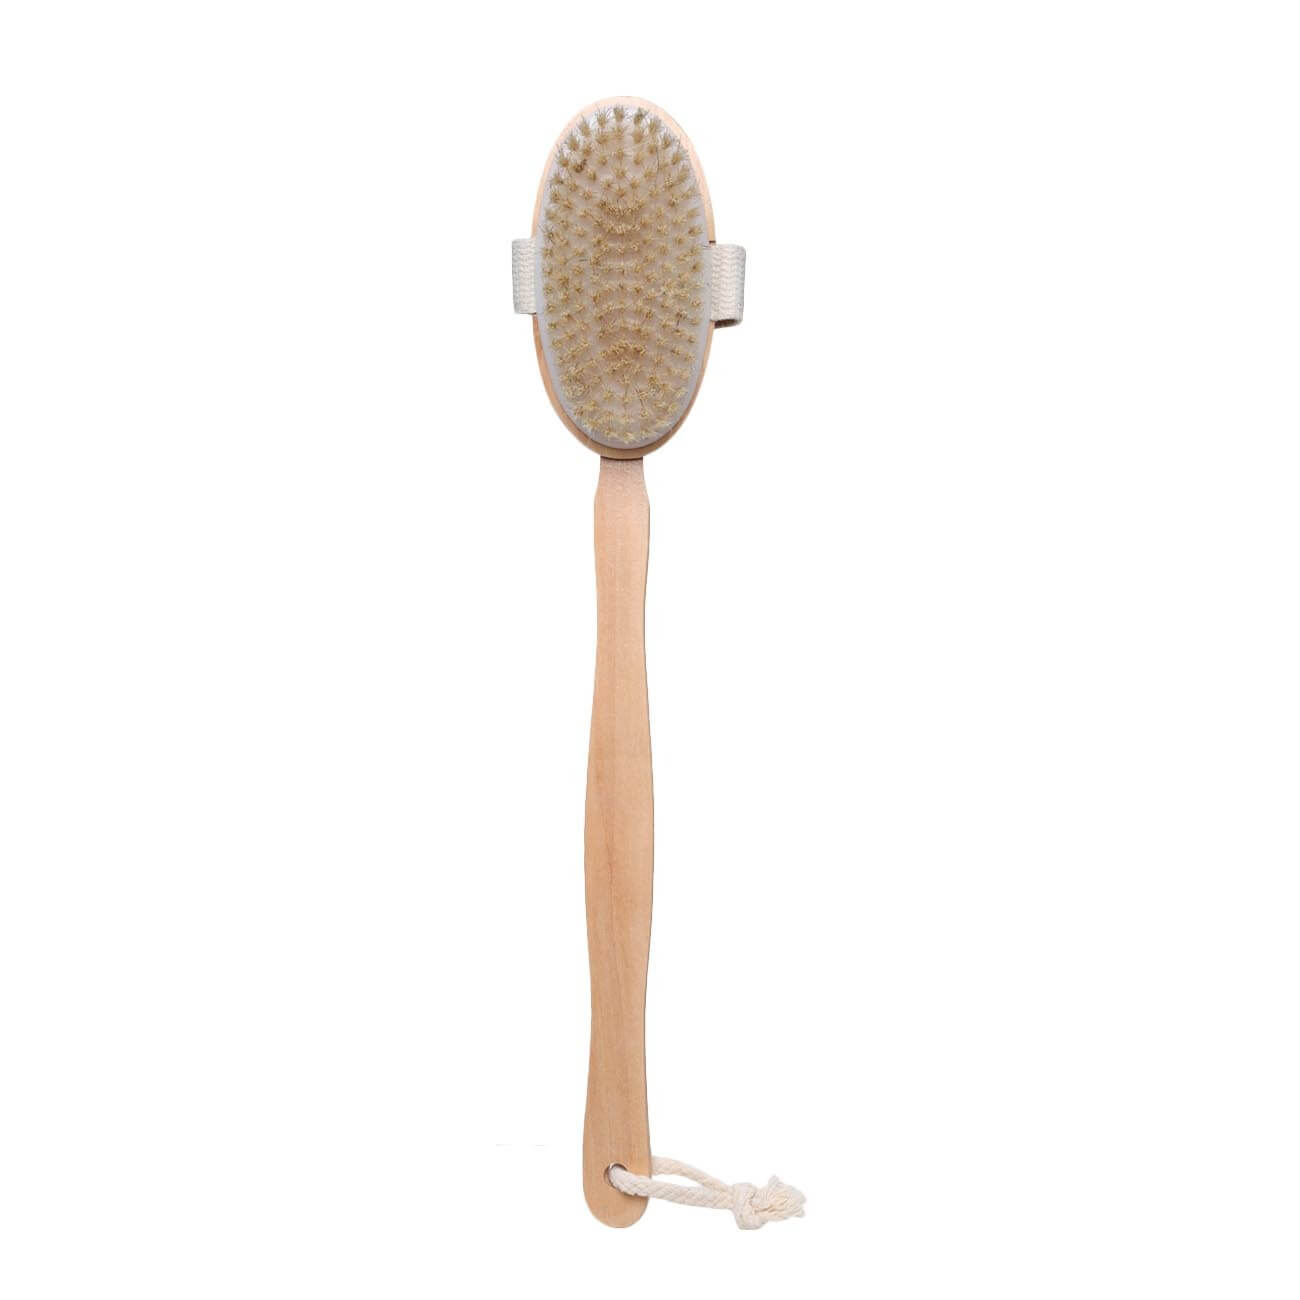 Щетка для сухого массажа, 40 см, с держателем, дерево/нейлон, Bamboo spa щетка для сухого массажа натуральная щетина 79 пучков